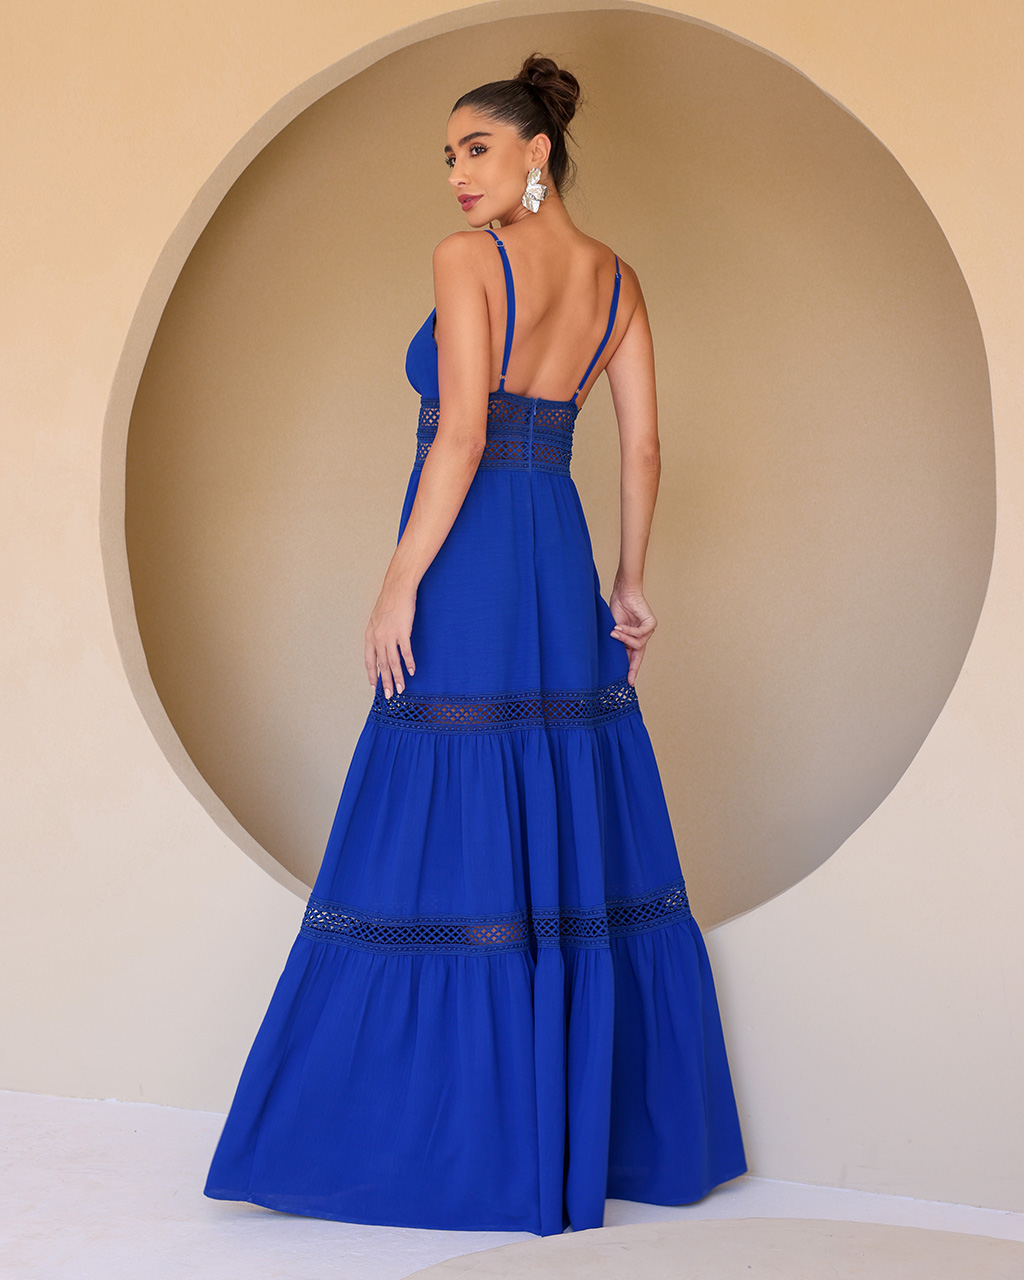 Vestido Longo Azul Analua - Empório NM